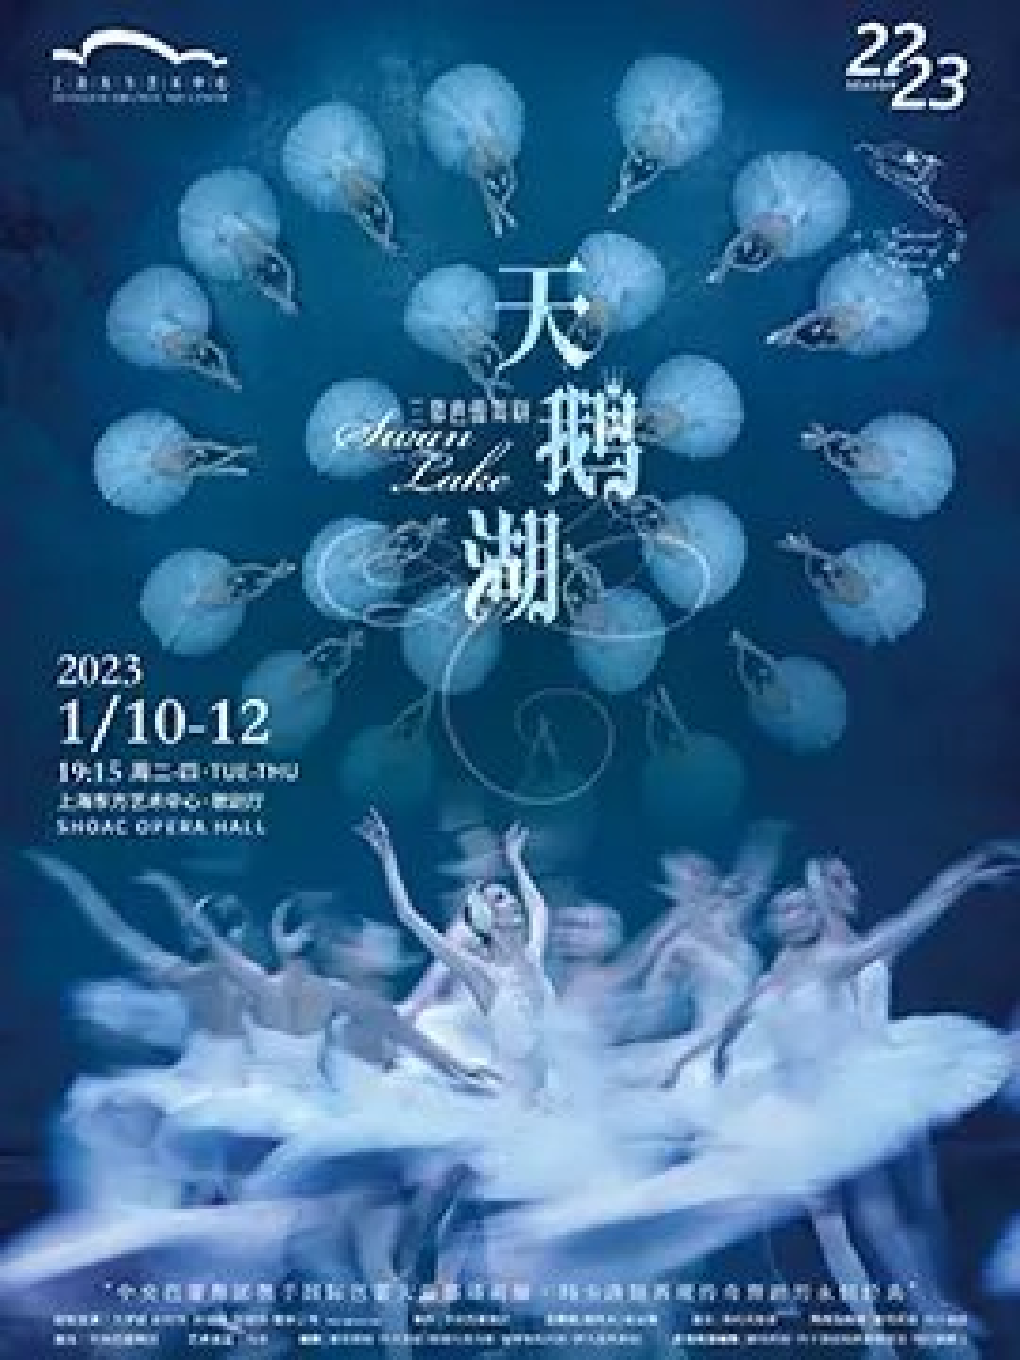 中央芭蕾舞团 古典芭蕾舞剧《天鹅湖》